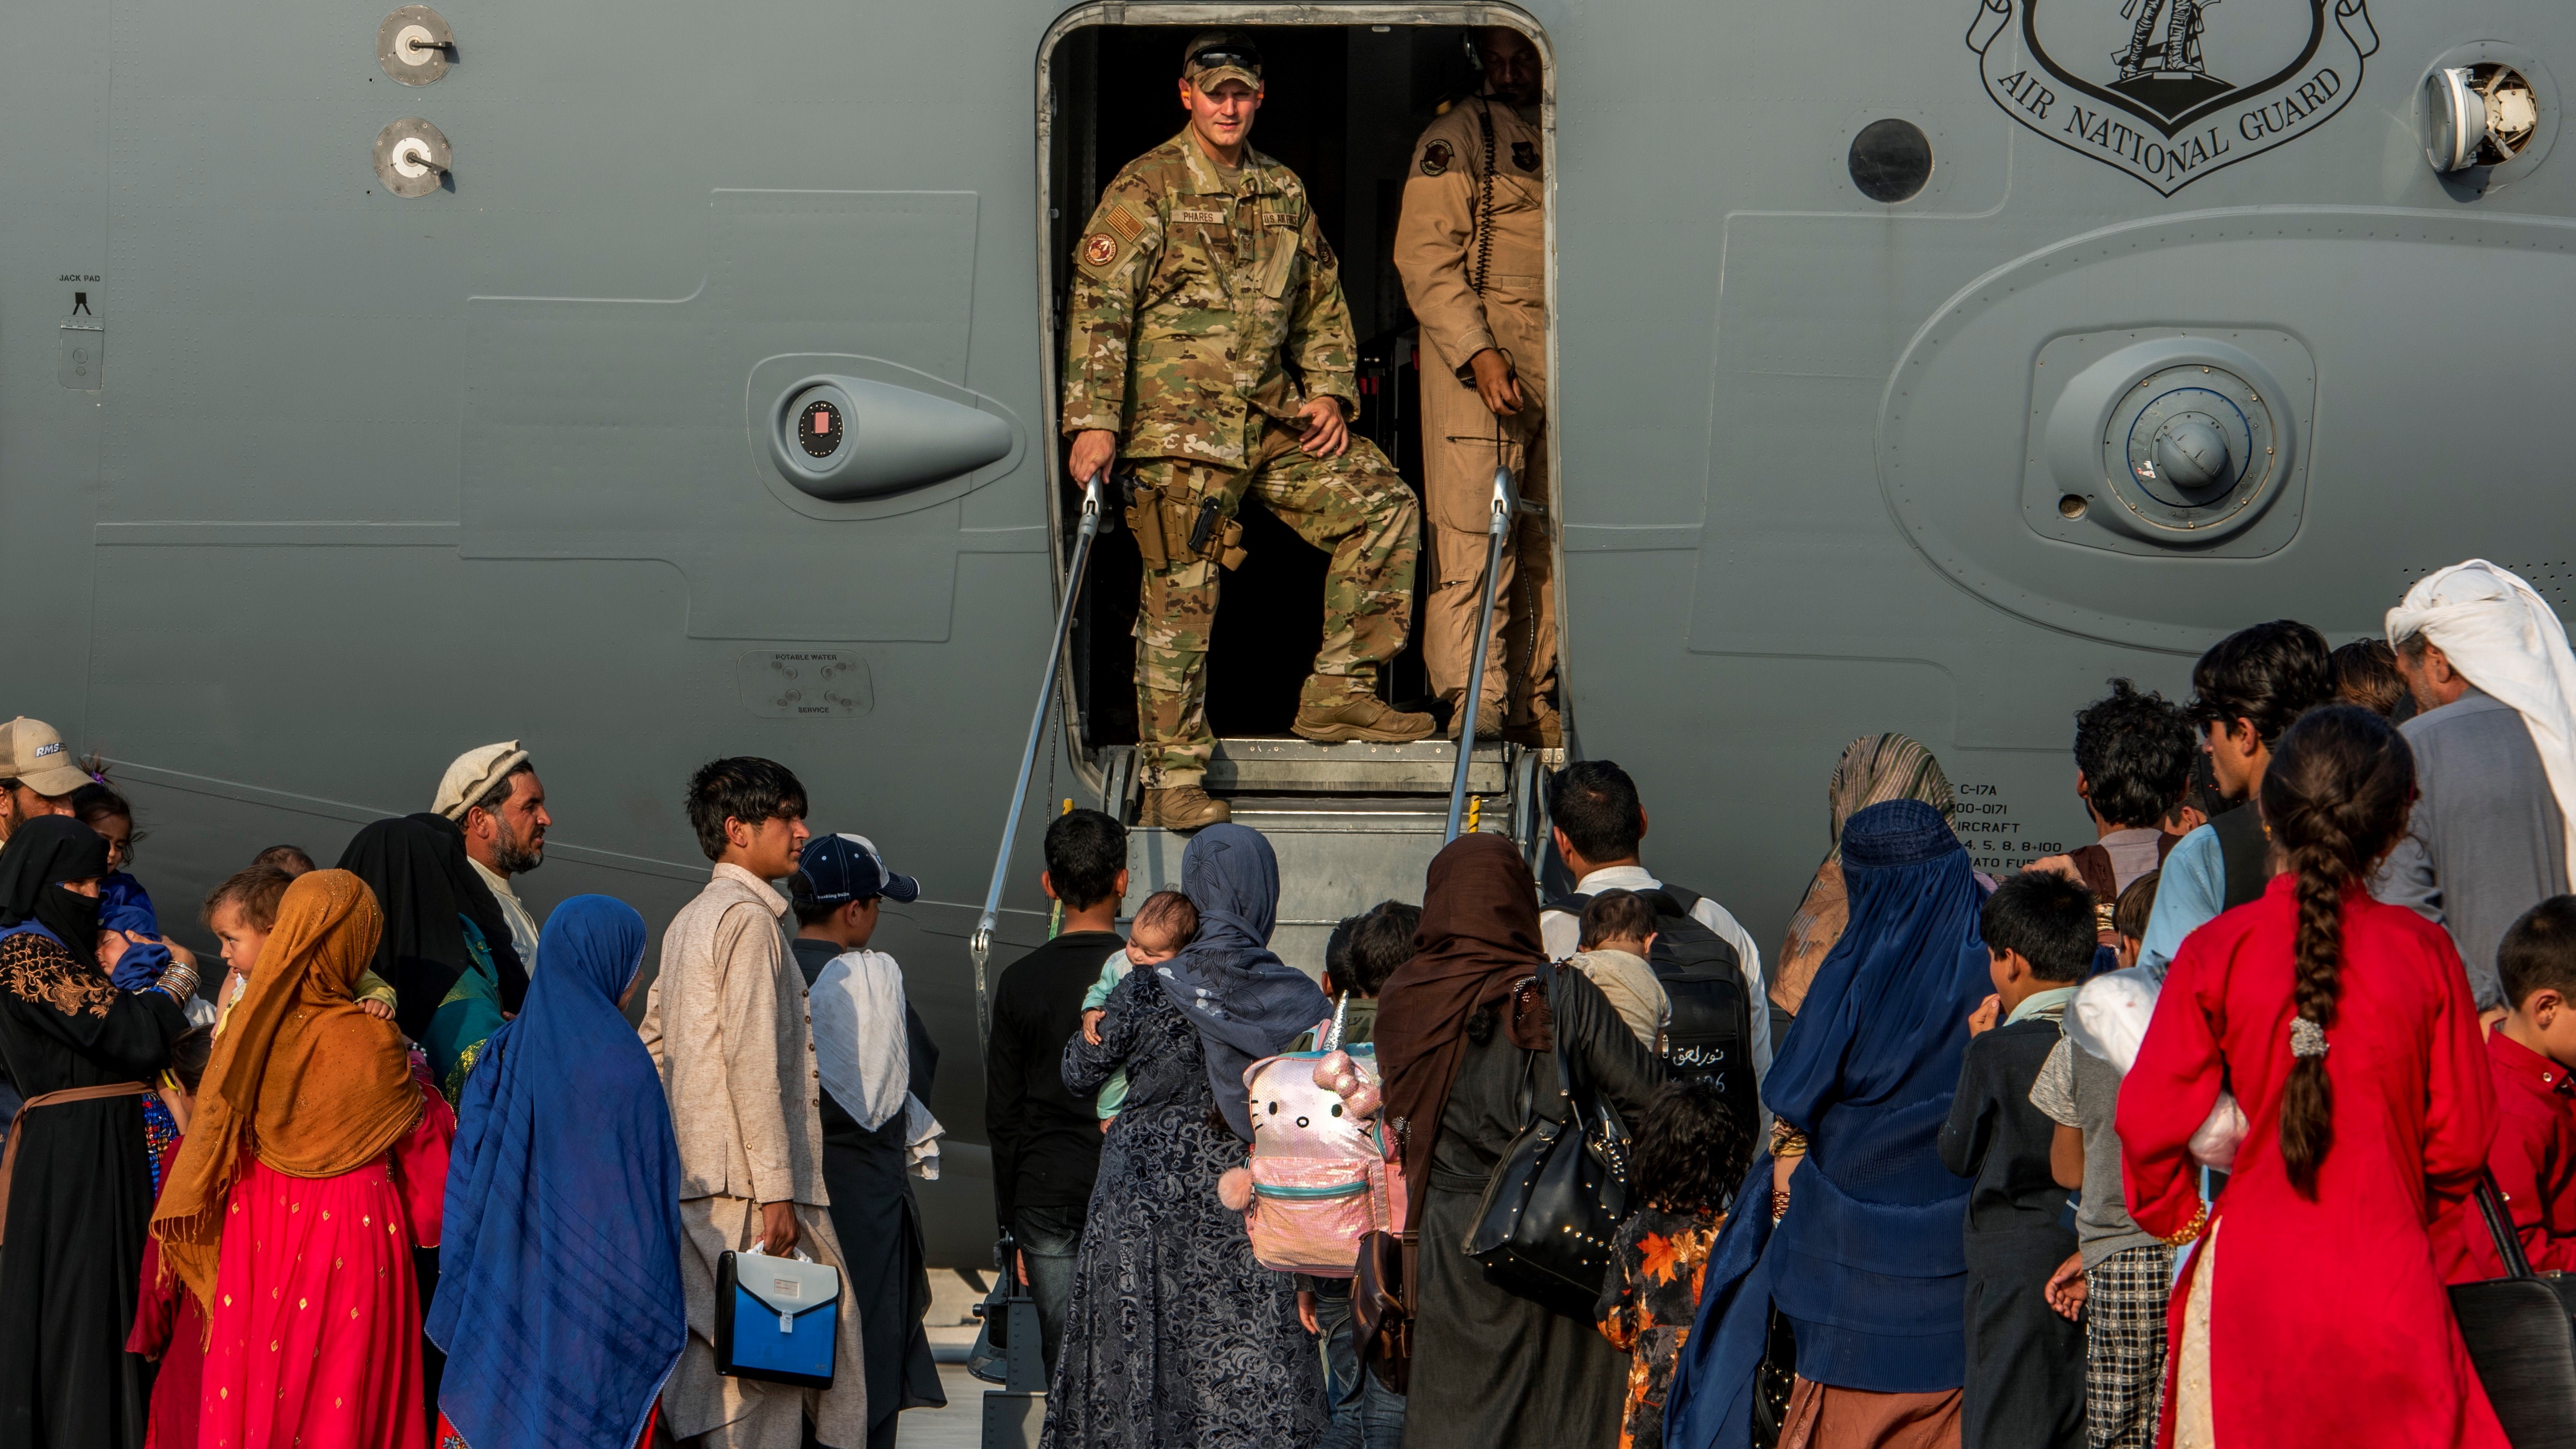 Az amerikai központi parancsnokság által közreadott képen Afganisztánból kimenekített emberek készülnek beszállni egy C-17 Globemaster III amerikai katonai teherszállító repülőgépbe a katari el-Udeid légi támaszponton 2021. augusztus 22-én. Az Egyesült Államok és szövetségesei légi úton menekítik ki a külföldi állampolgárokat és a velük együttműködő afgánokat, miután az iszlamista tálibok elfoglalták Afganisztán csaknem egészét.MTI/EPA/Amerikai központi parancsnokság/Kylie Barrow